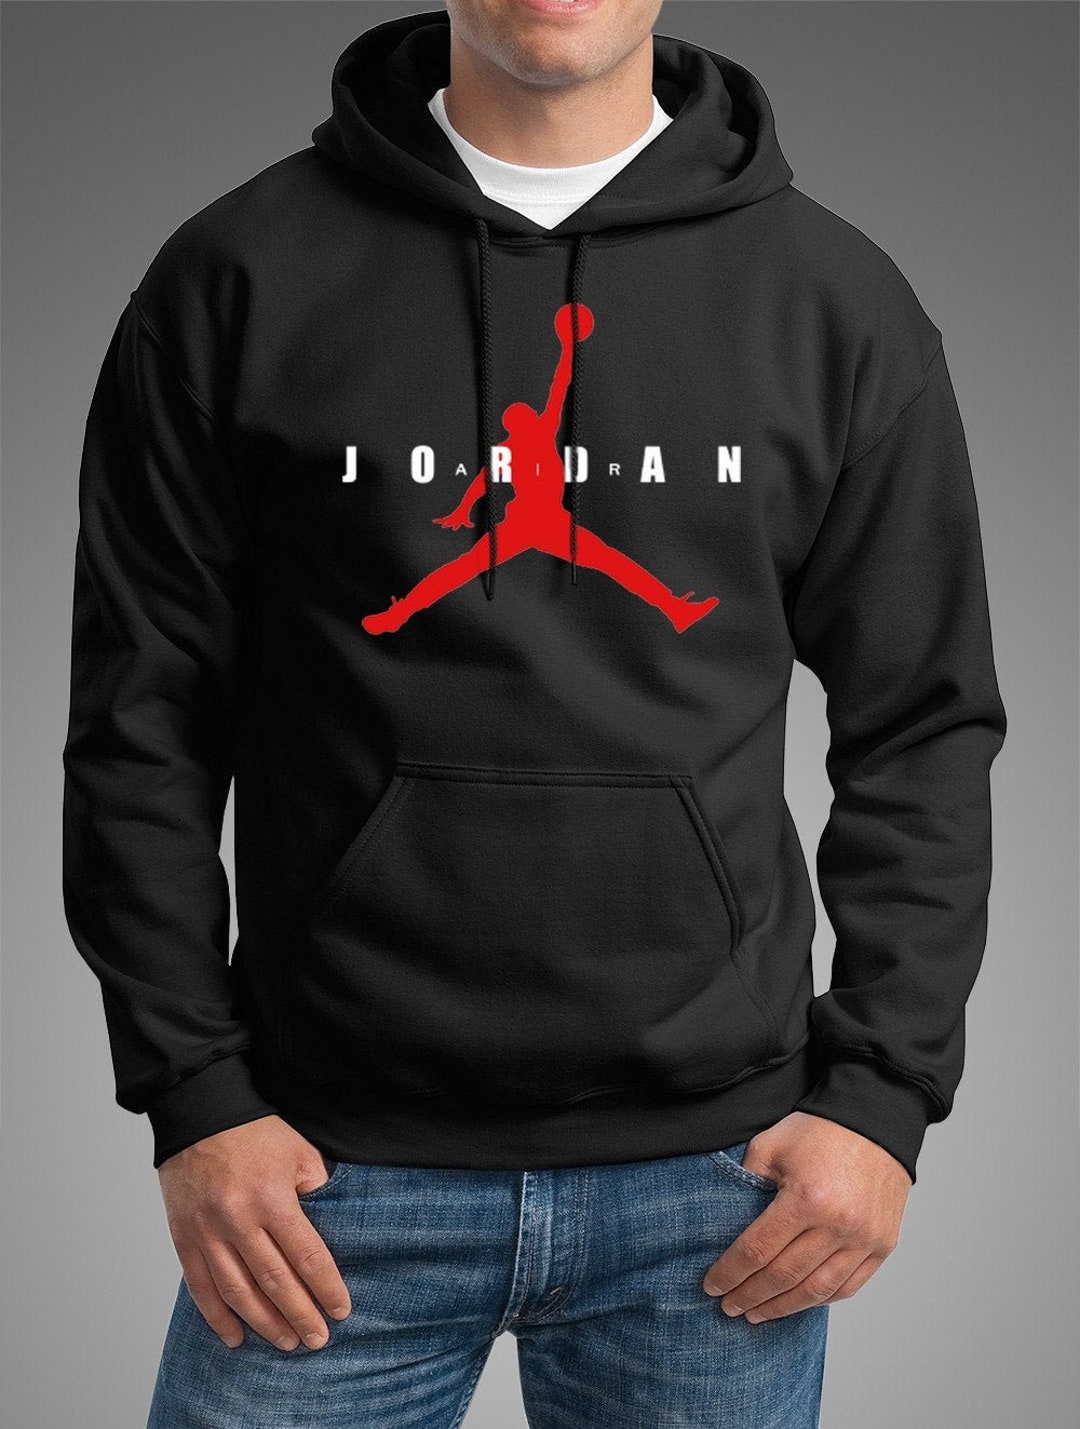 Air Jordan Hoodie, Jordan 1 Hoodie Sweatshirt, Pullover Hoodie